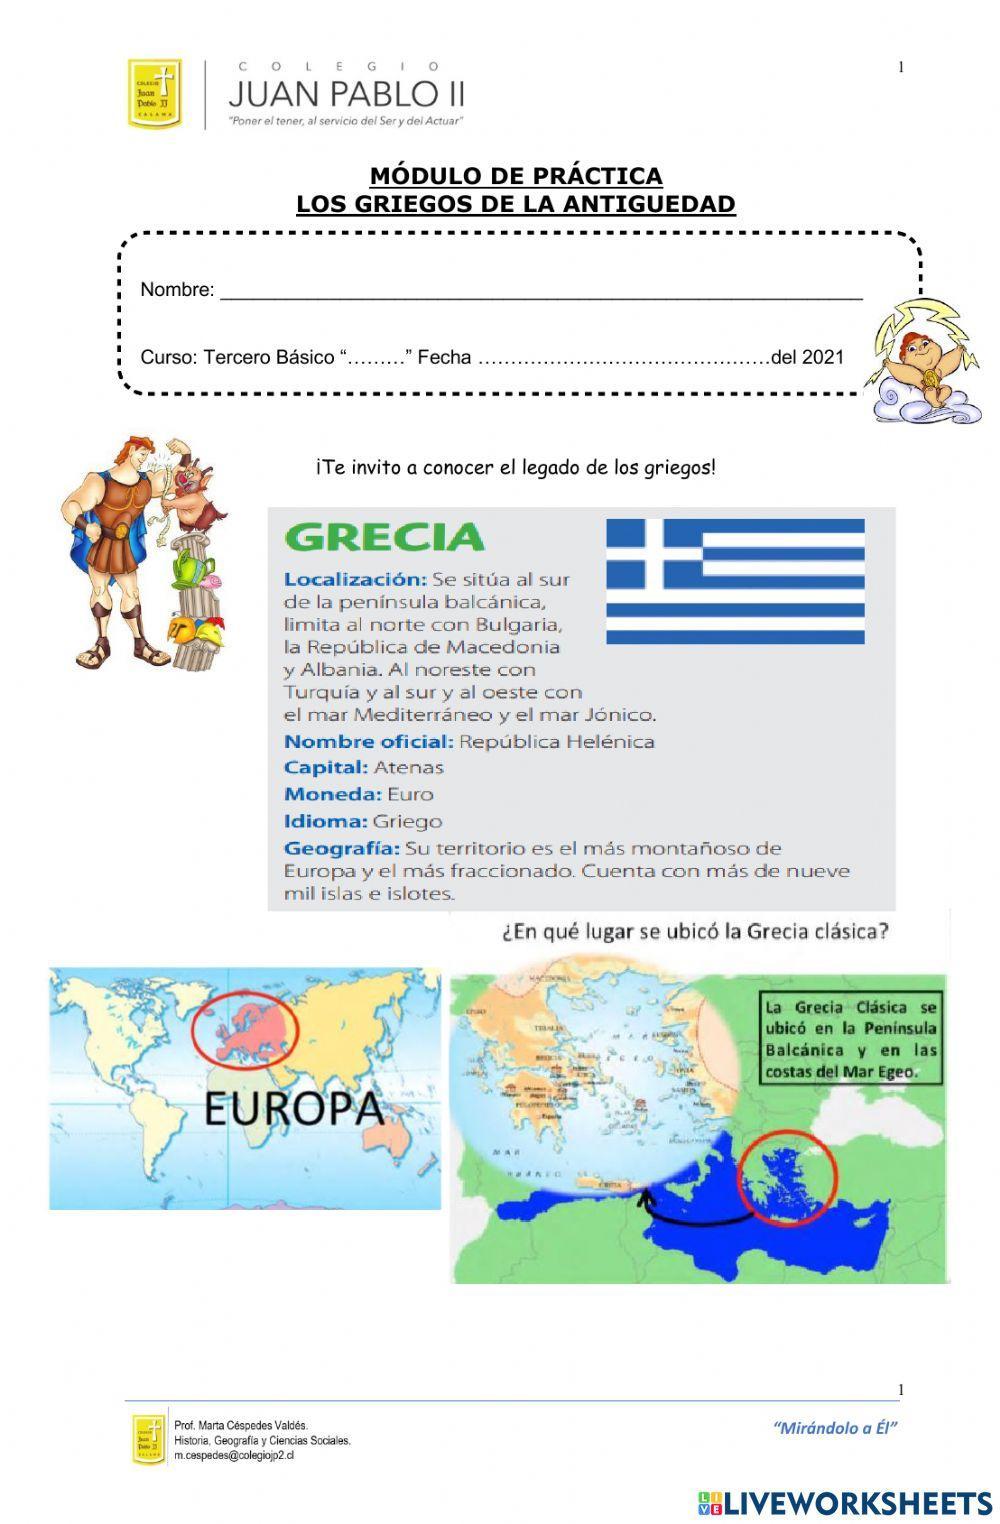 Grecia, espacio geográfico